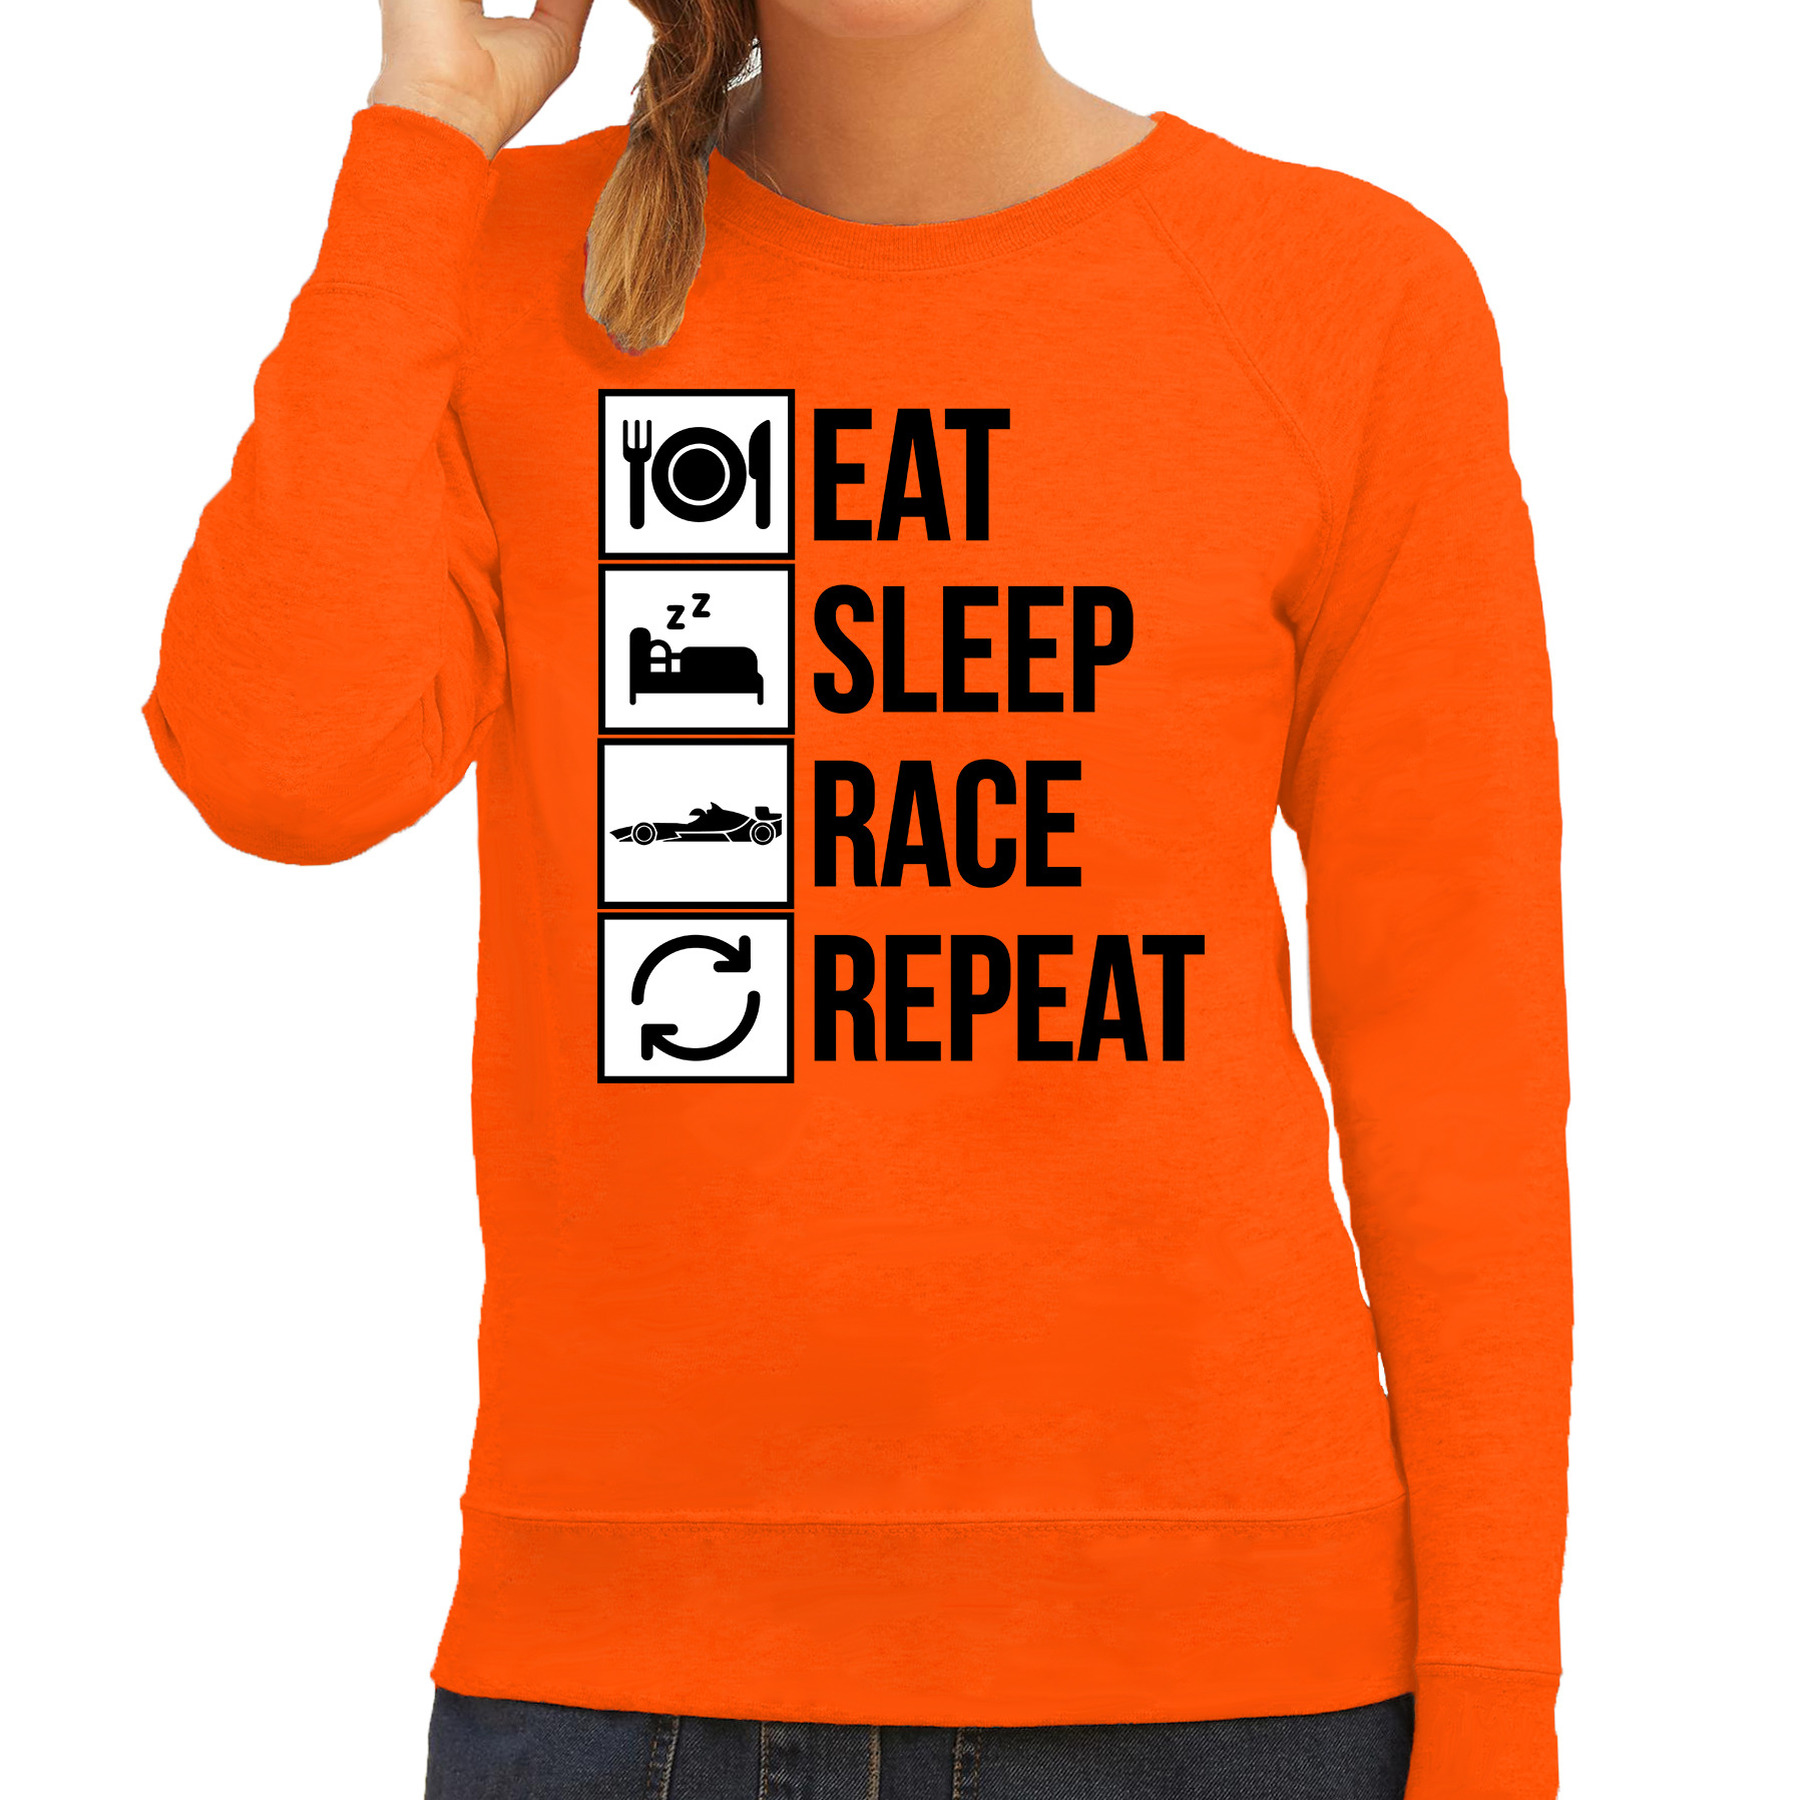 Eat sleep race repeat supporter - race fan sweater oranje voor dames